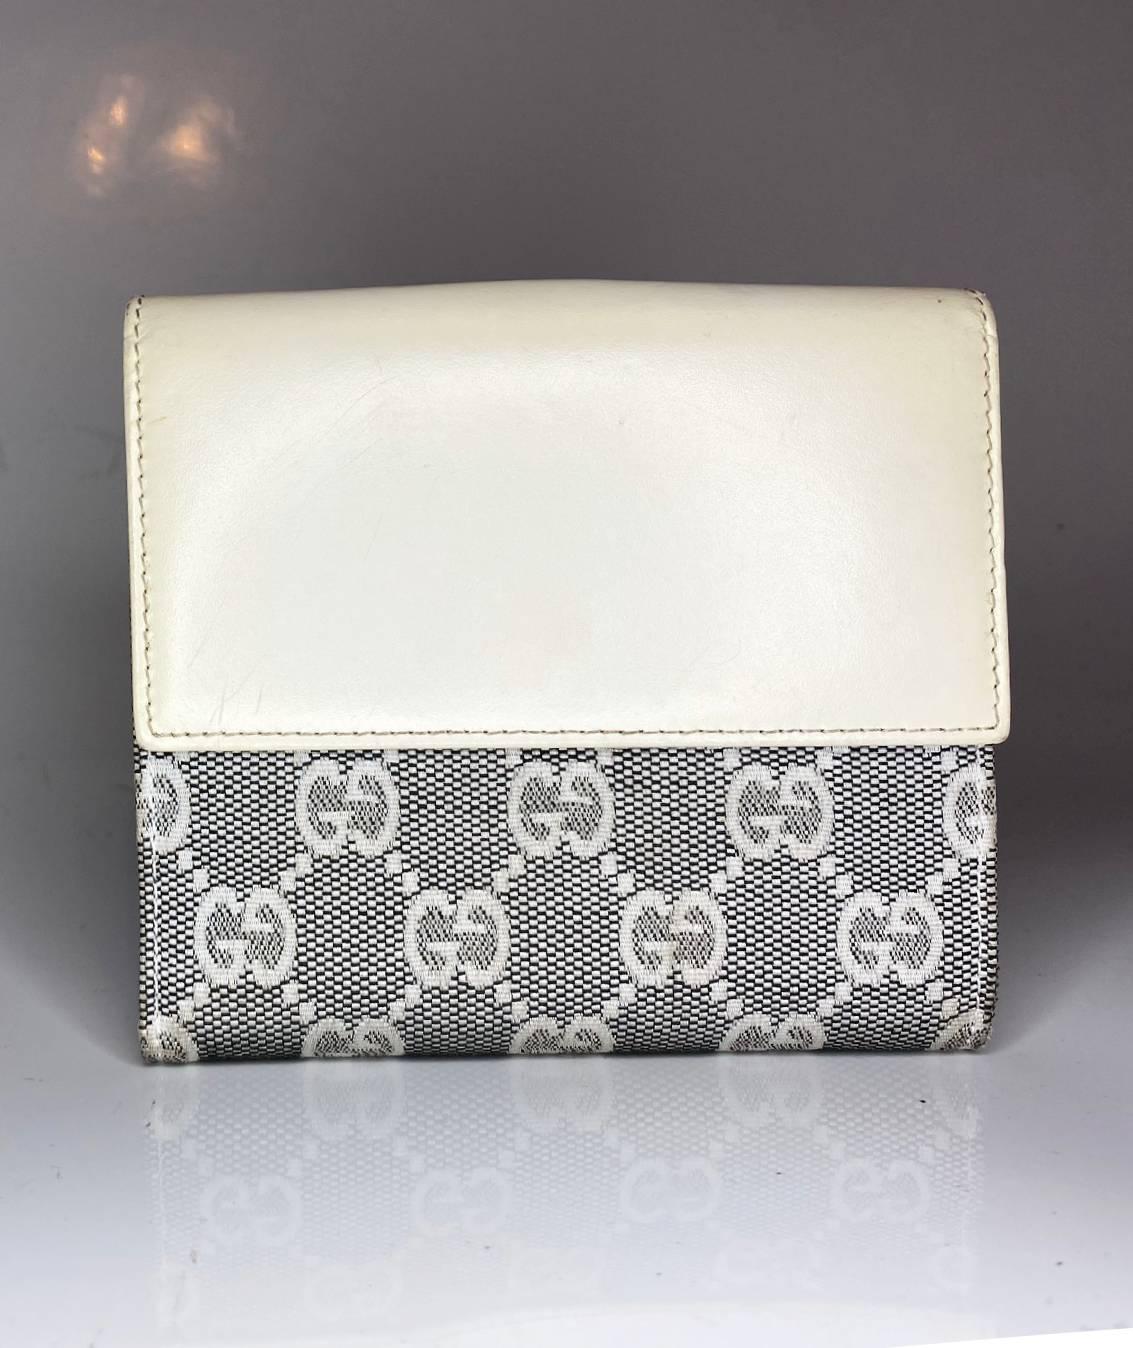 Diese Gucci Jackie 1961 Geldbörse zeichnet sich durch ein klassisches graues Monogramm aus Canvas-Leder, einen Vorderverschluss und mehrere Fächer für Karten und Münzen aus. Das für den modernen Lebensstil konzipierte Portemonnaie strahlt eine